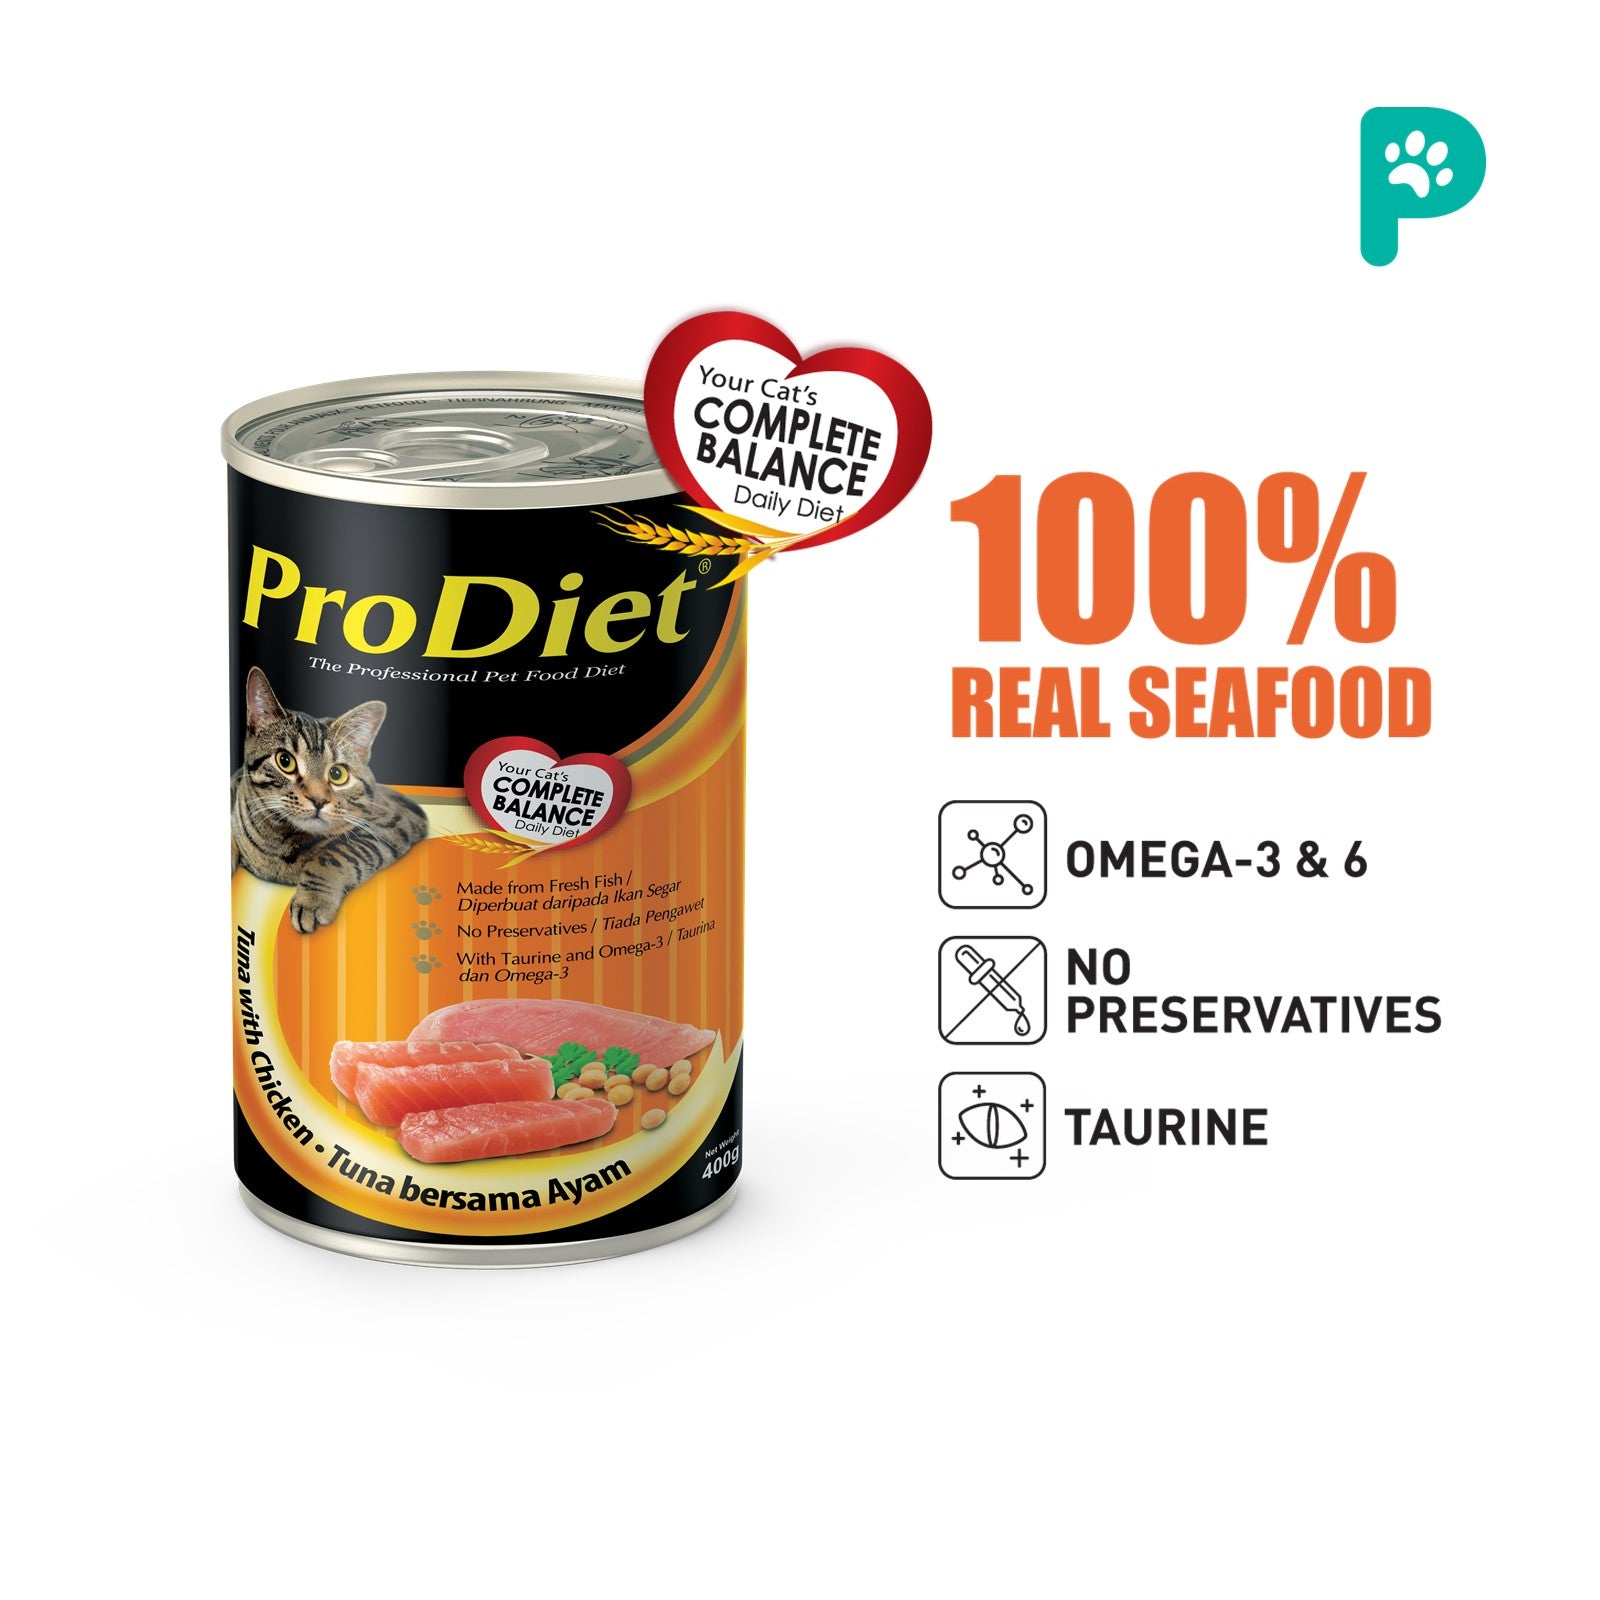 ProDiet 400G Wet Cat Food (Chicken & Tuna)